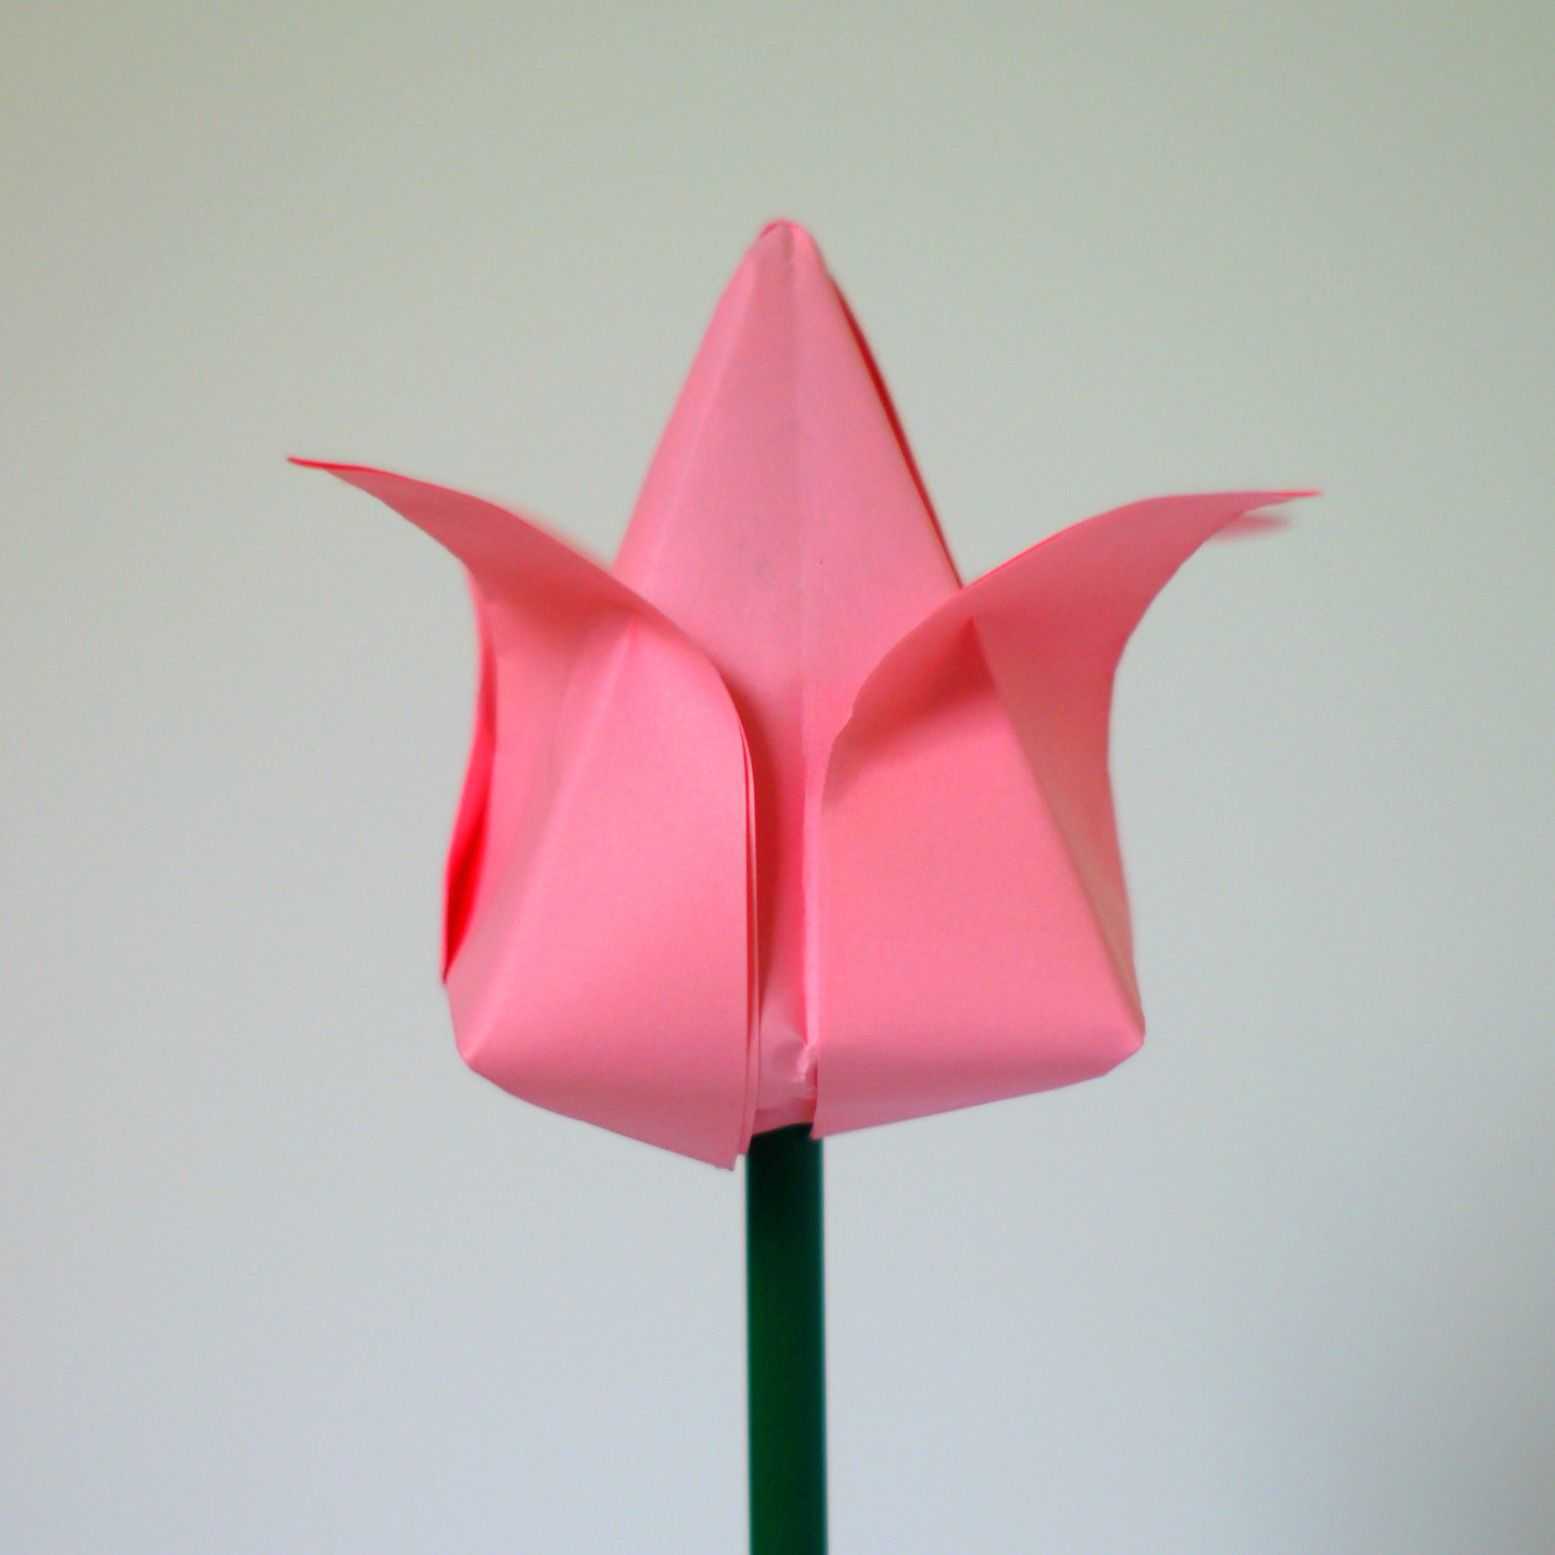 Тюльпан из бумаги поэтапно — схемы и шаблоны для начинающих, фото, учимся складывать оригами цветы из бумаги